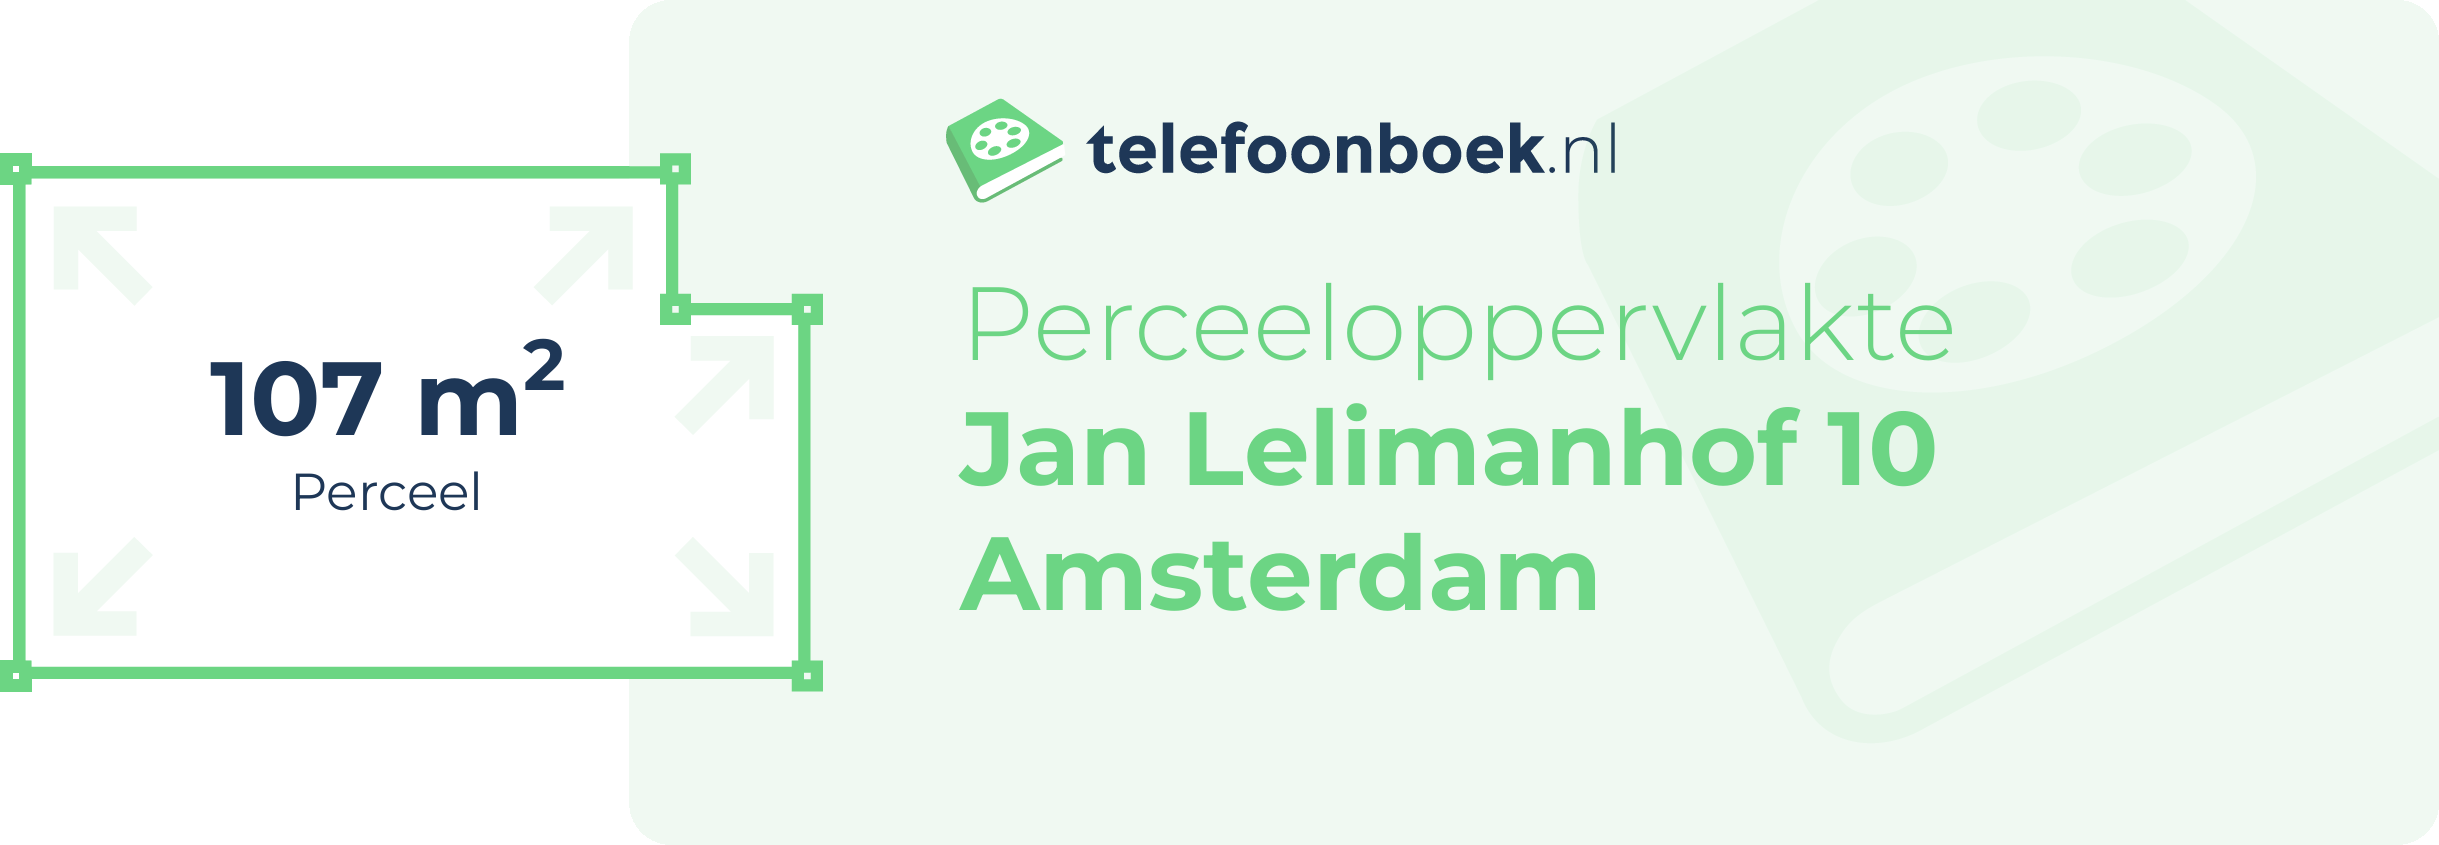 Perceeloppervlakte Jan Lelimanhof 10 Amsterdam